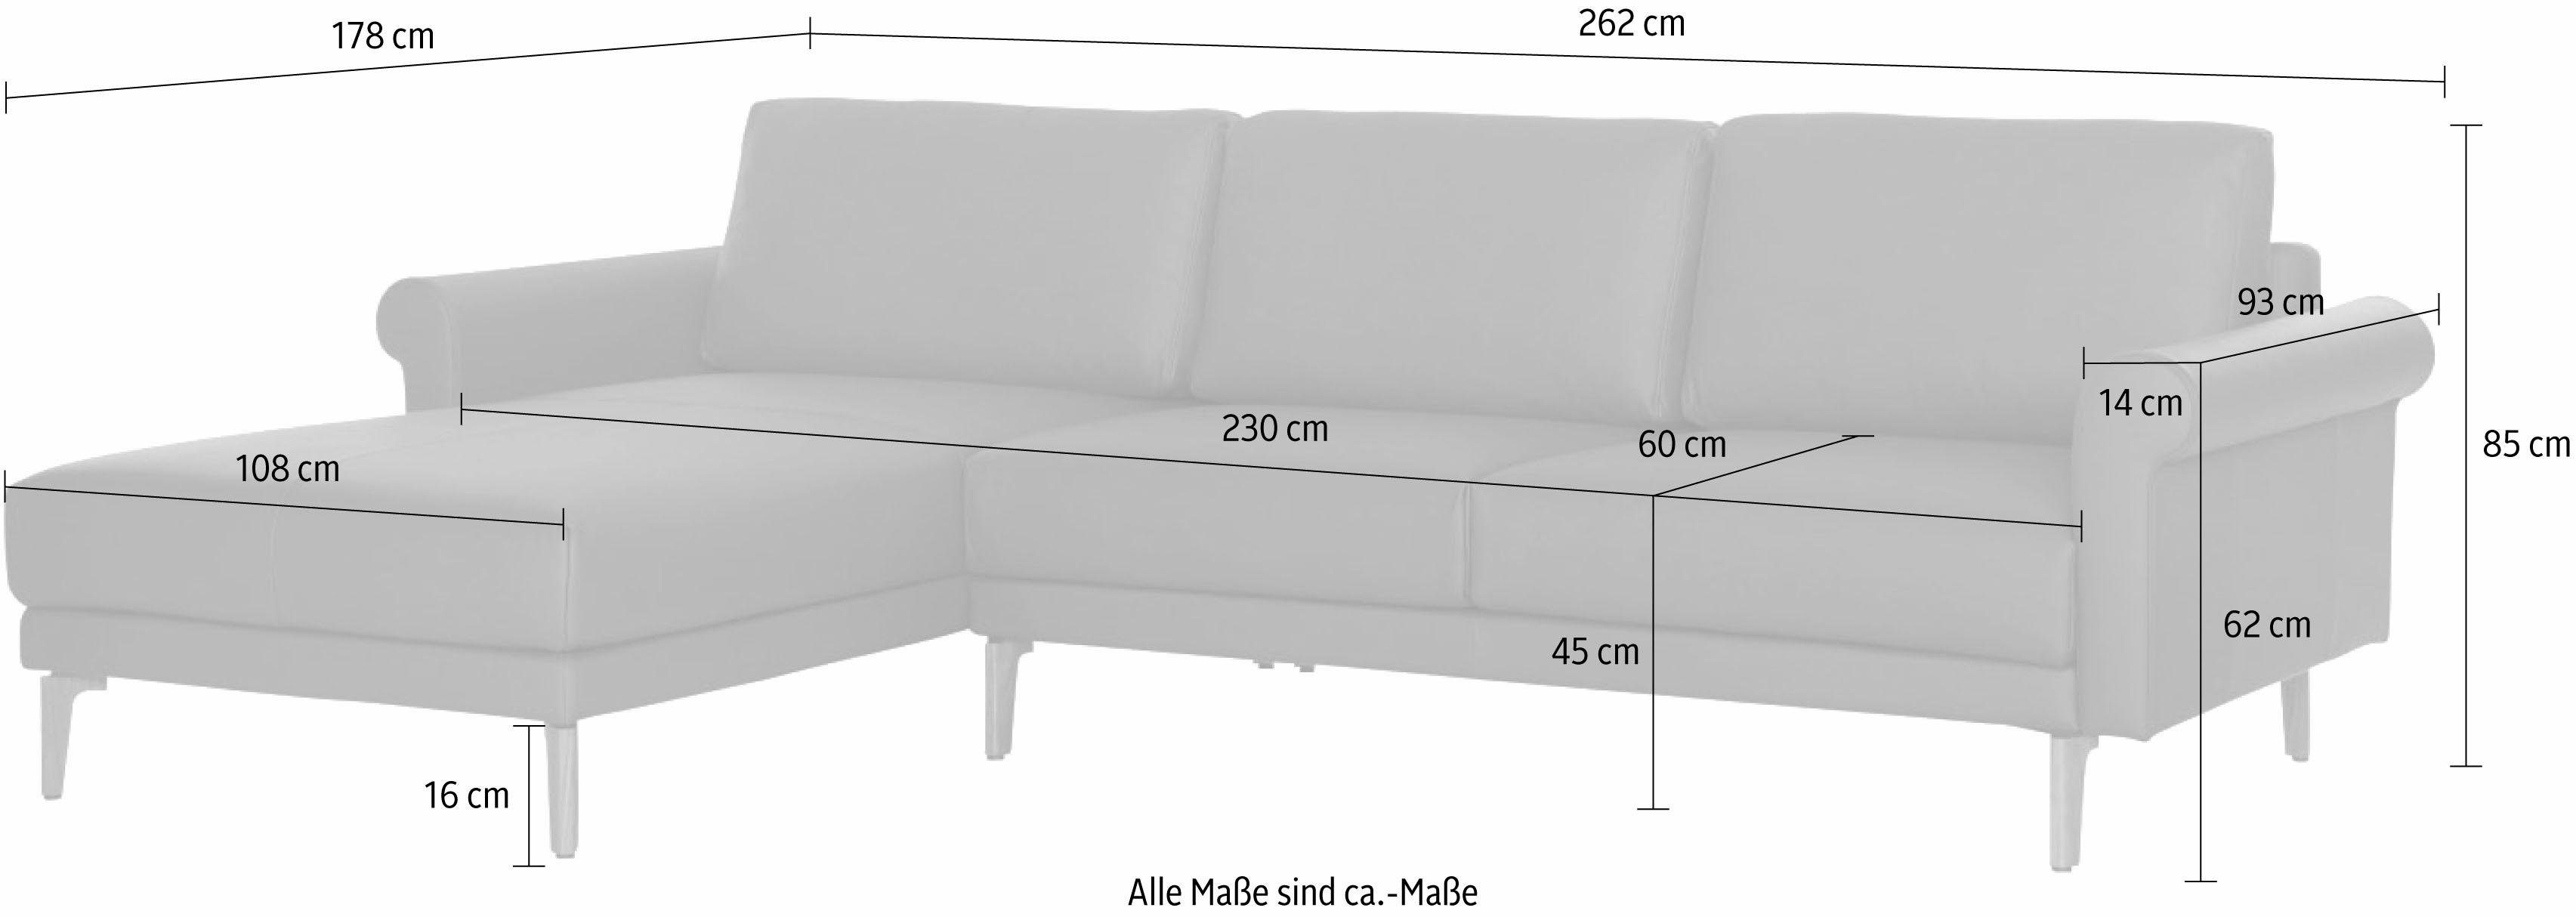 Fuß hülsta cm, Nussbaum modern Landhaus, sofa Schnecke Armlehne 262 hs.450, Breite Ecksofa